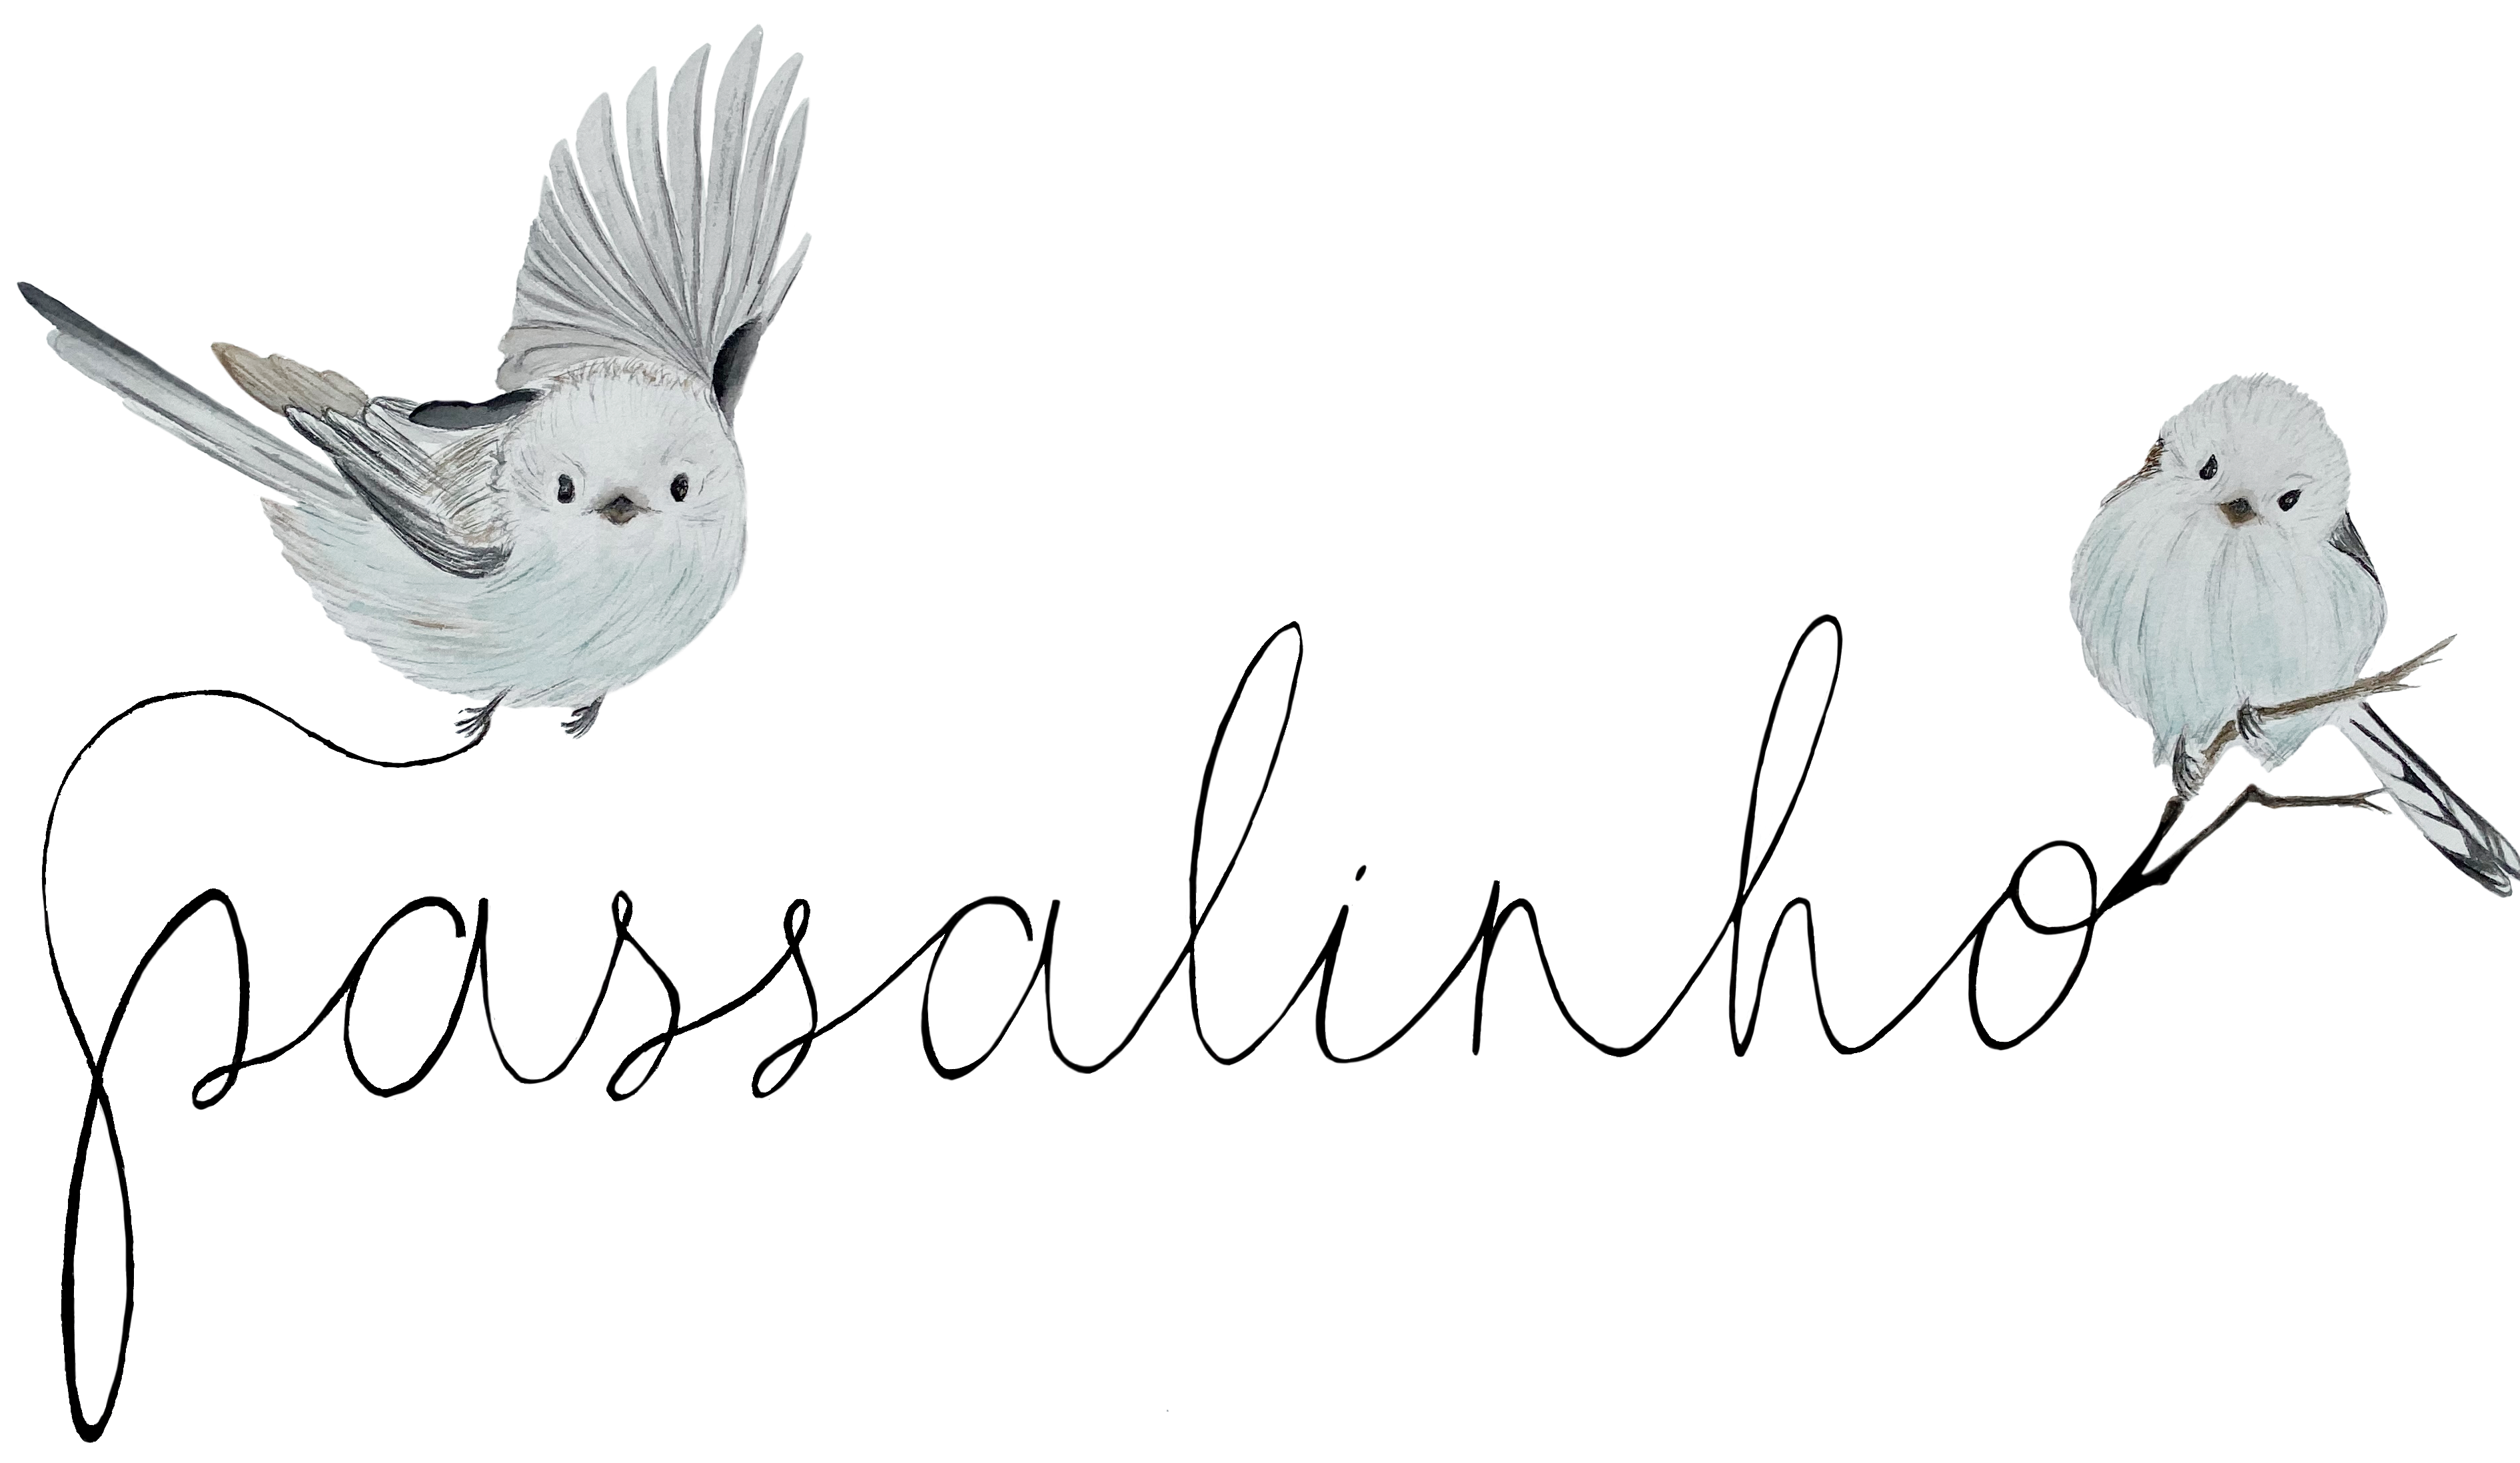 logotipo da marca passalinho, com a palavra passalinho escrita em letra cursiva e dois pássaros aquarelados, um pássaro voando e outro pousado no logo